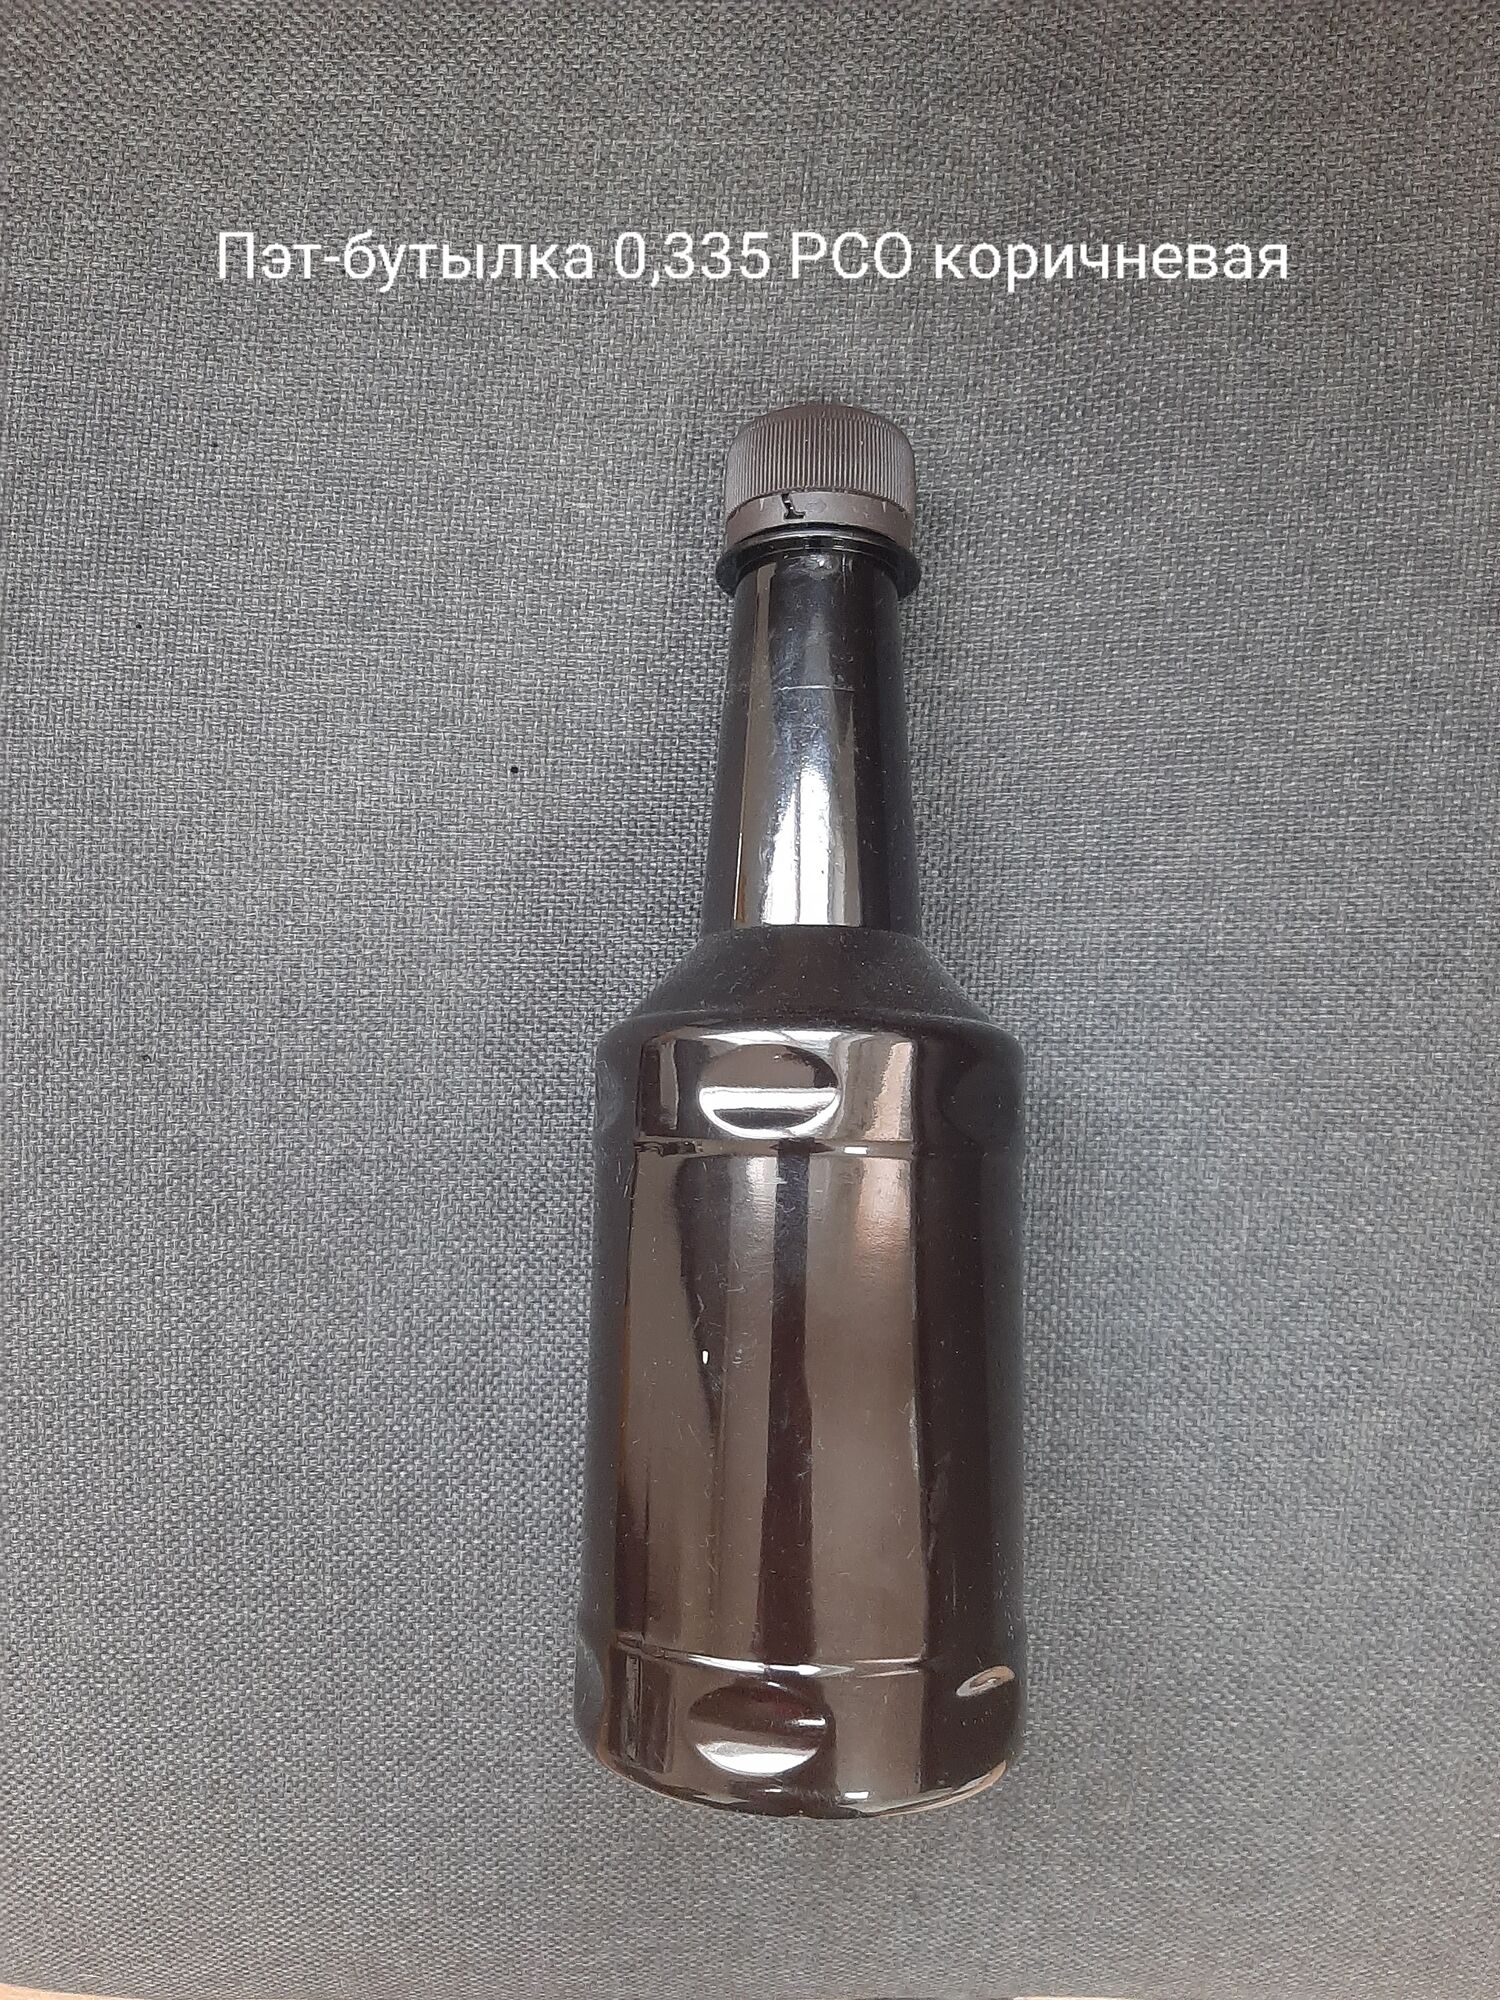 Пэт-бутылка 0,335 РСО, коричневая (150 шт в упаковке) вес 36,5 гр